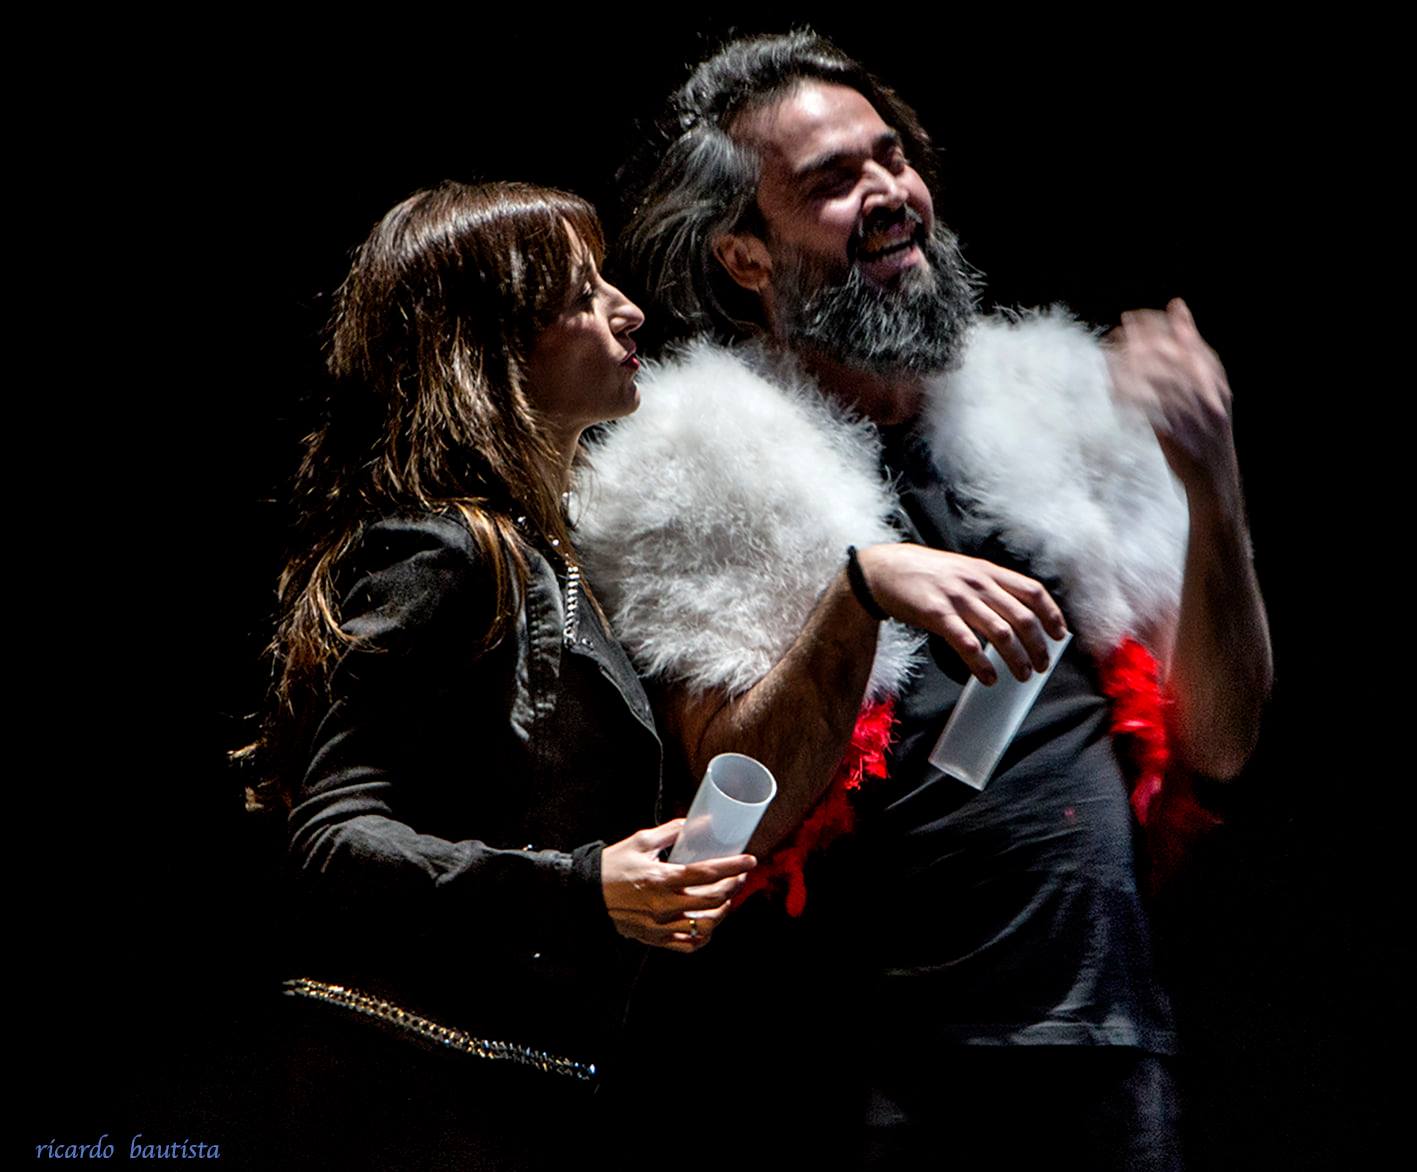 Imagen del espectáculo -  Emma, Óliver y Andrés